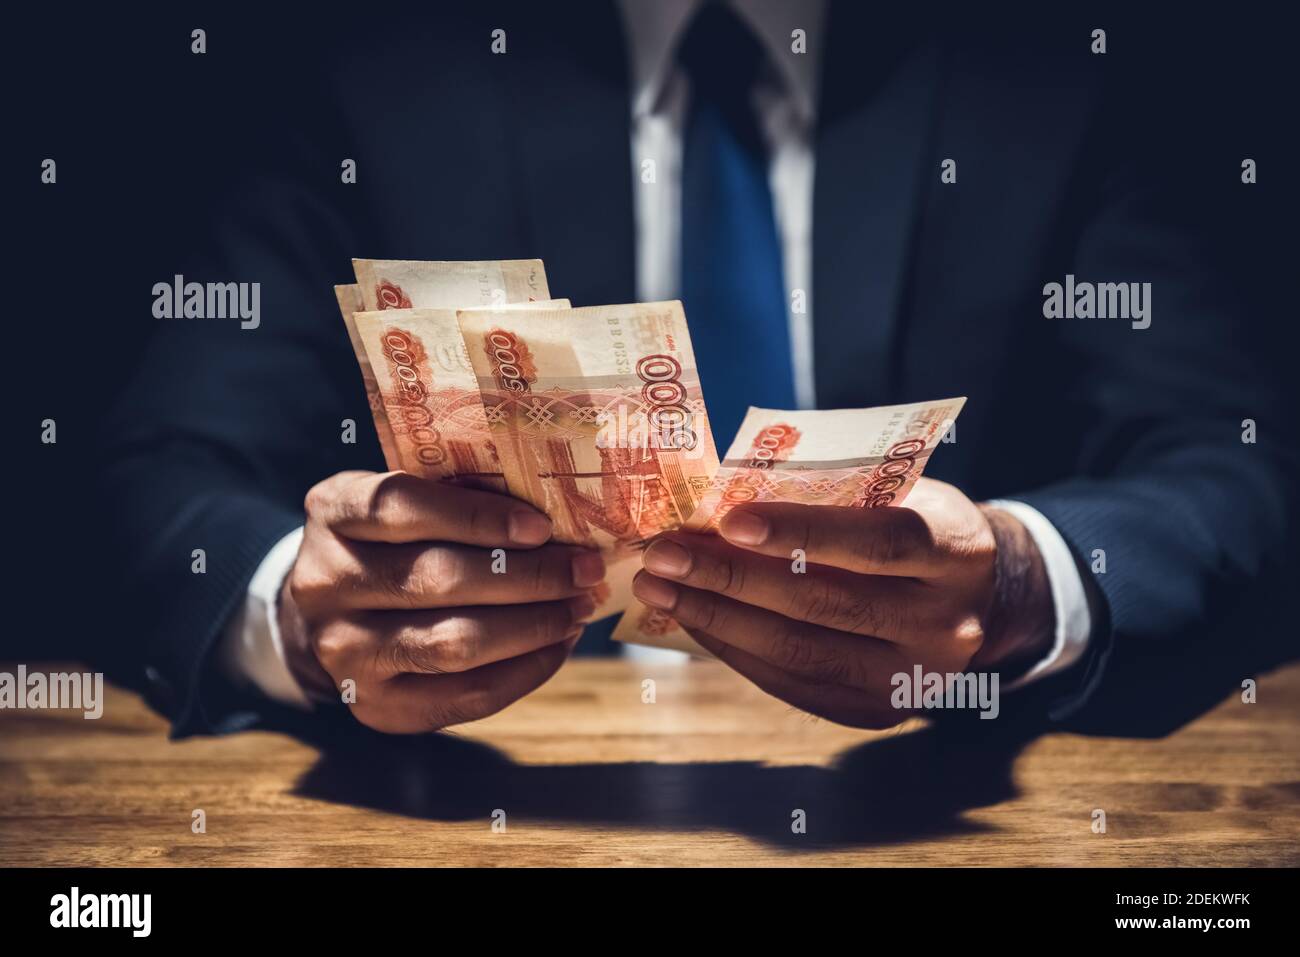 Uomo d'affari che conta denaro, valuta rubla russa, al tavolo in camera privata oscura - concetti di venalità e corruzione Foto Stock